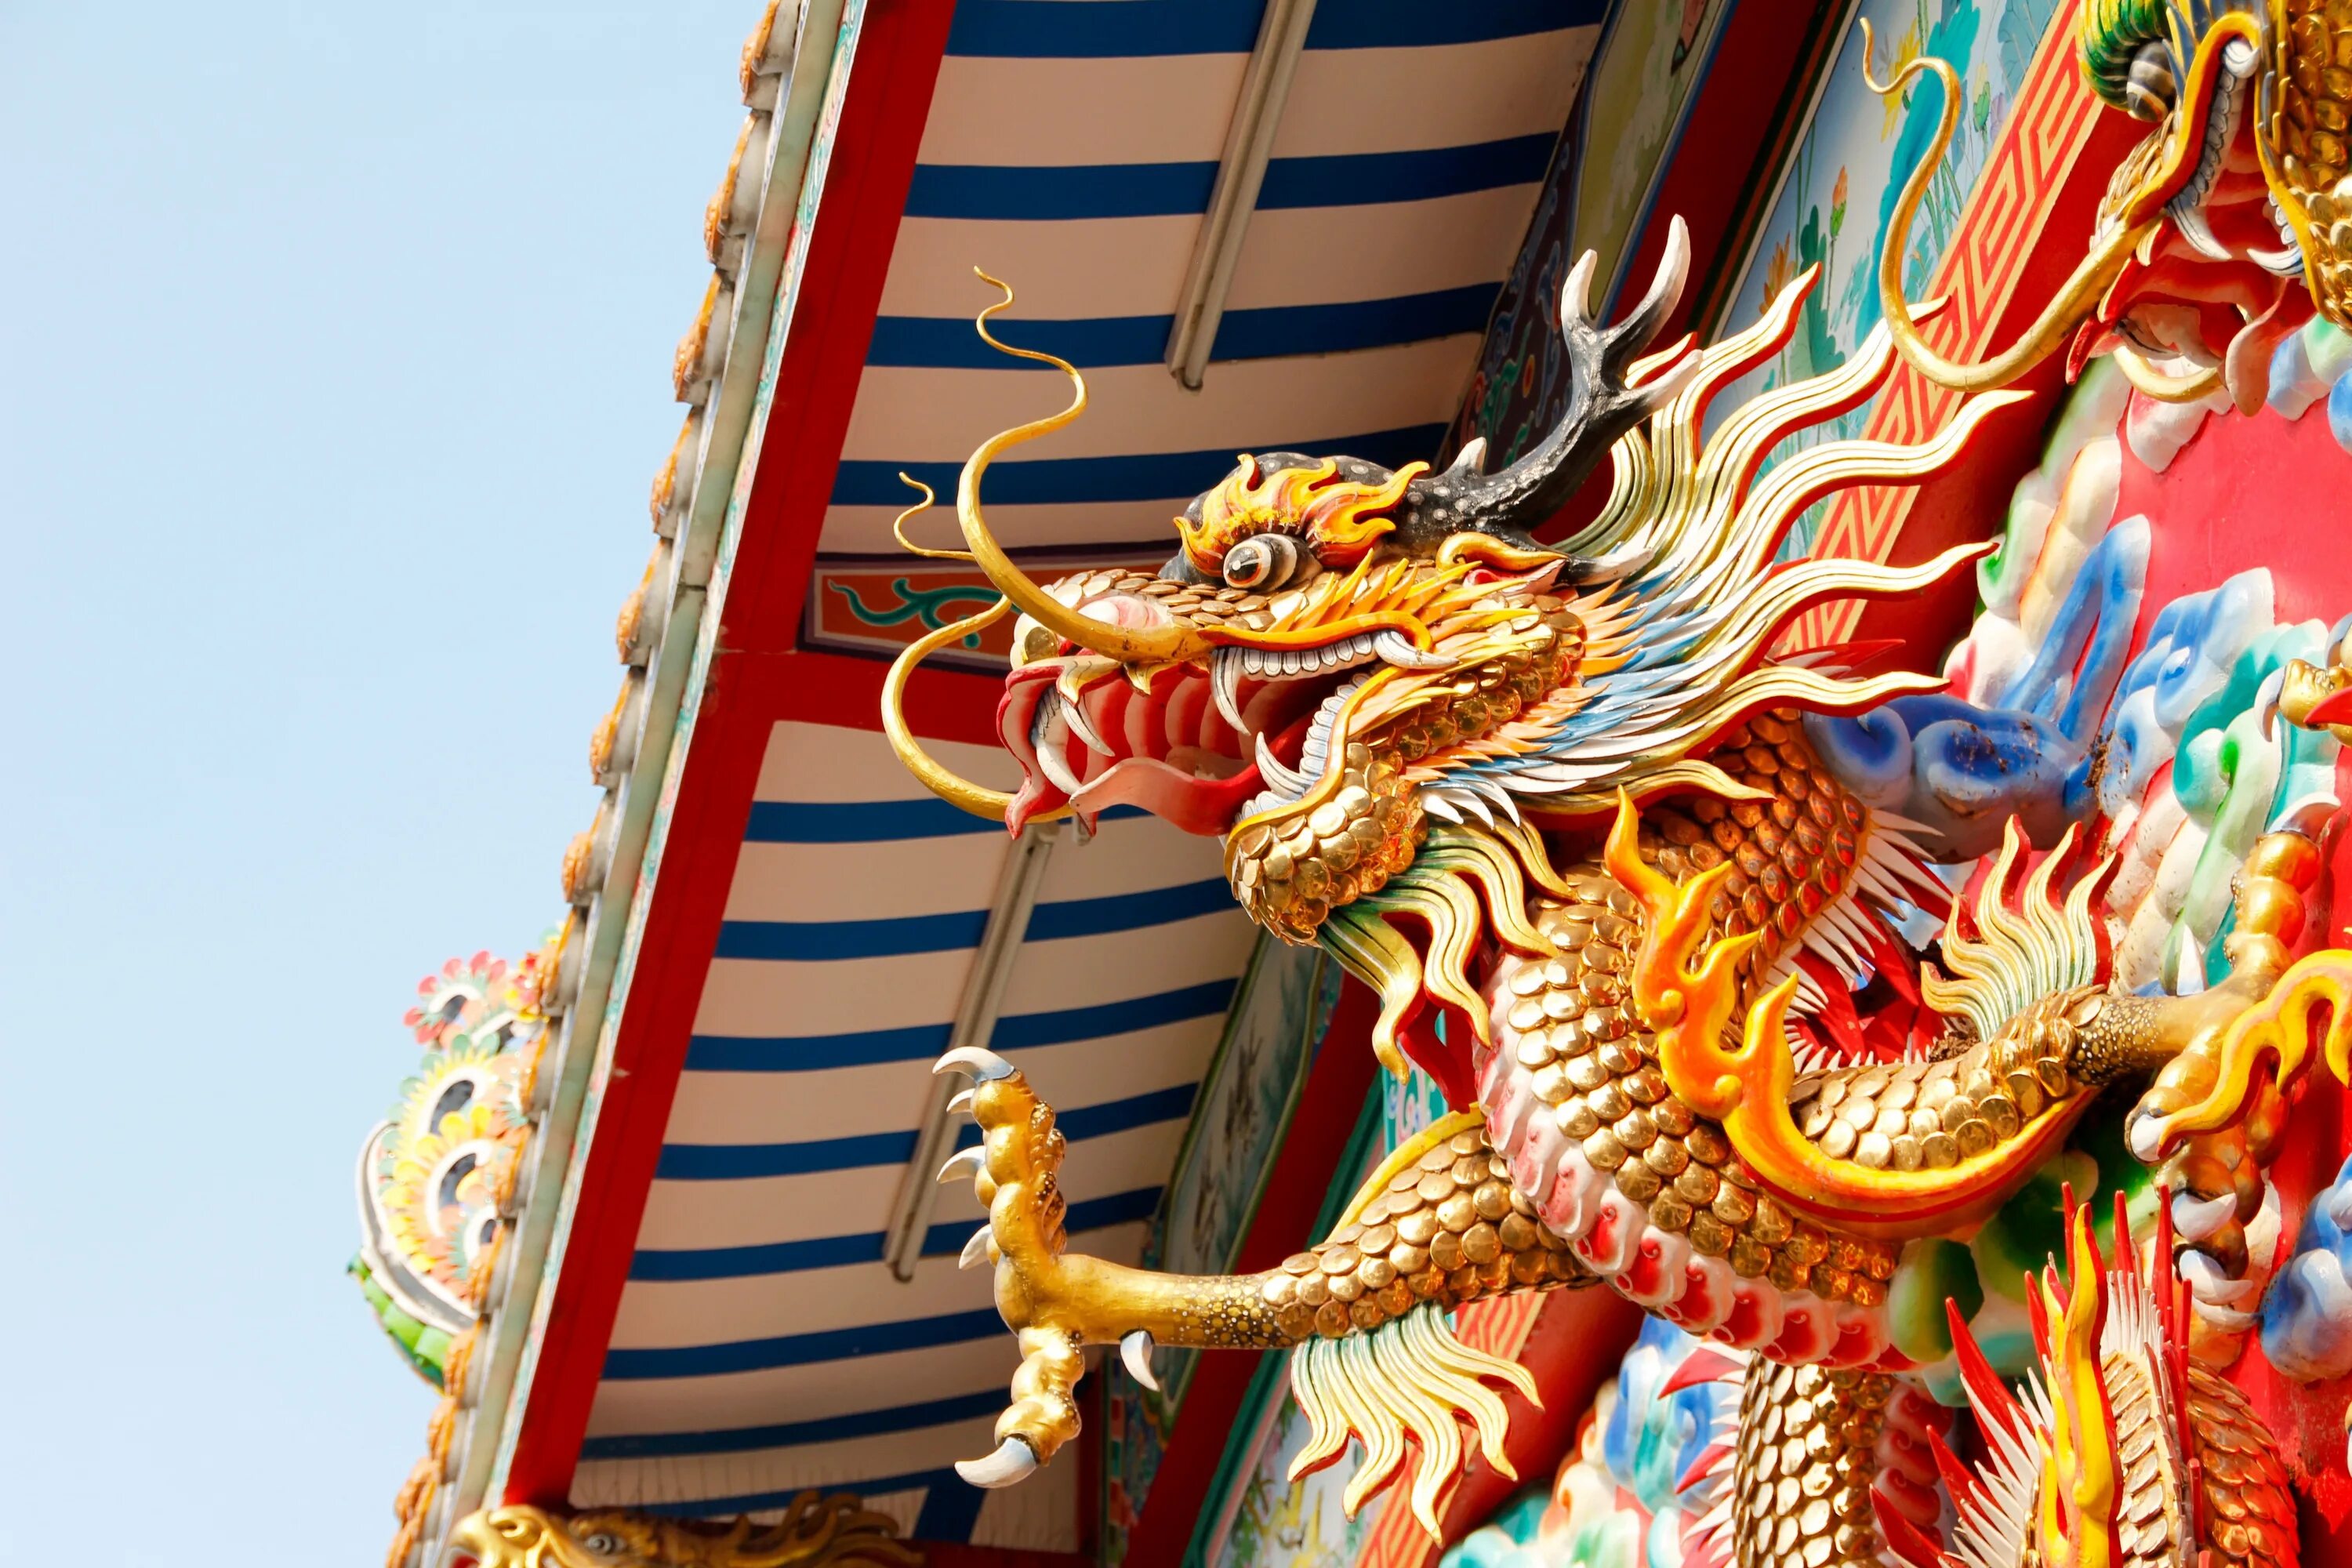 Китайские развлечения. Храм дракона Тайланд. Буддийский дракон на крышу. Китайский новый год на ВДНХ. Драконы в буддийских храмах.